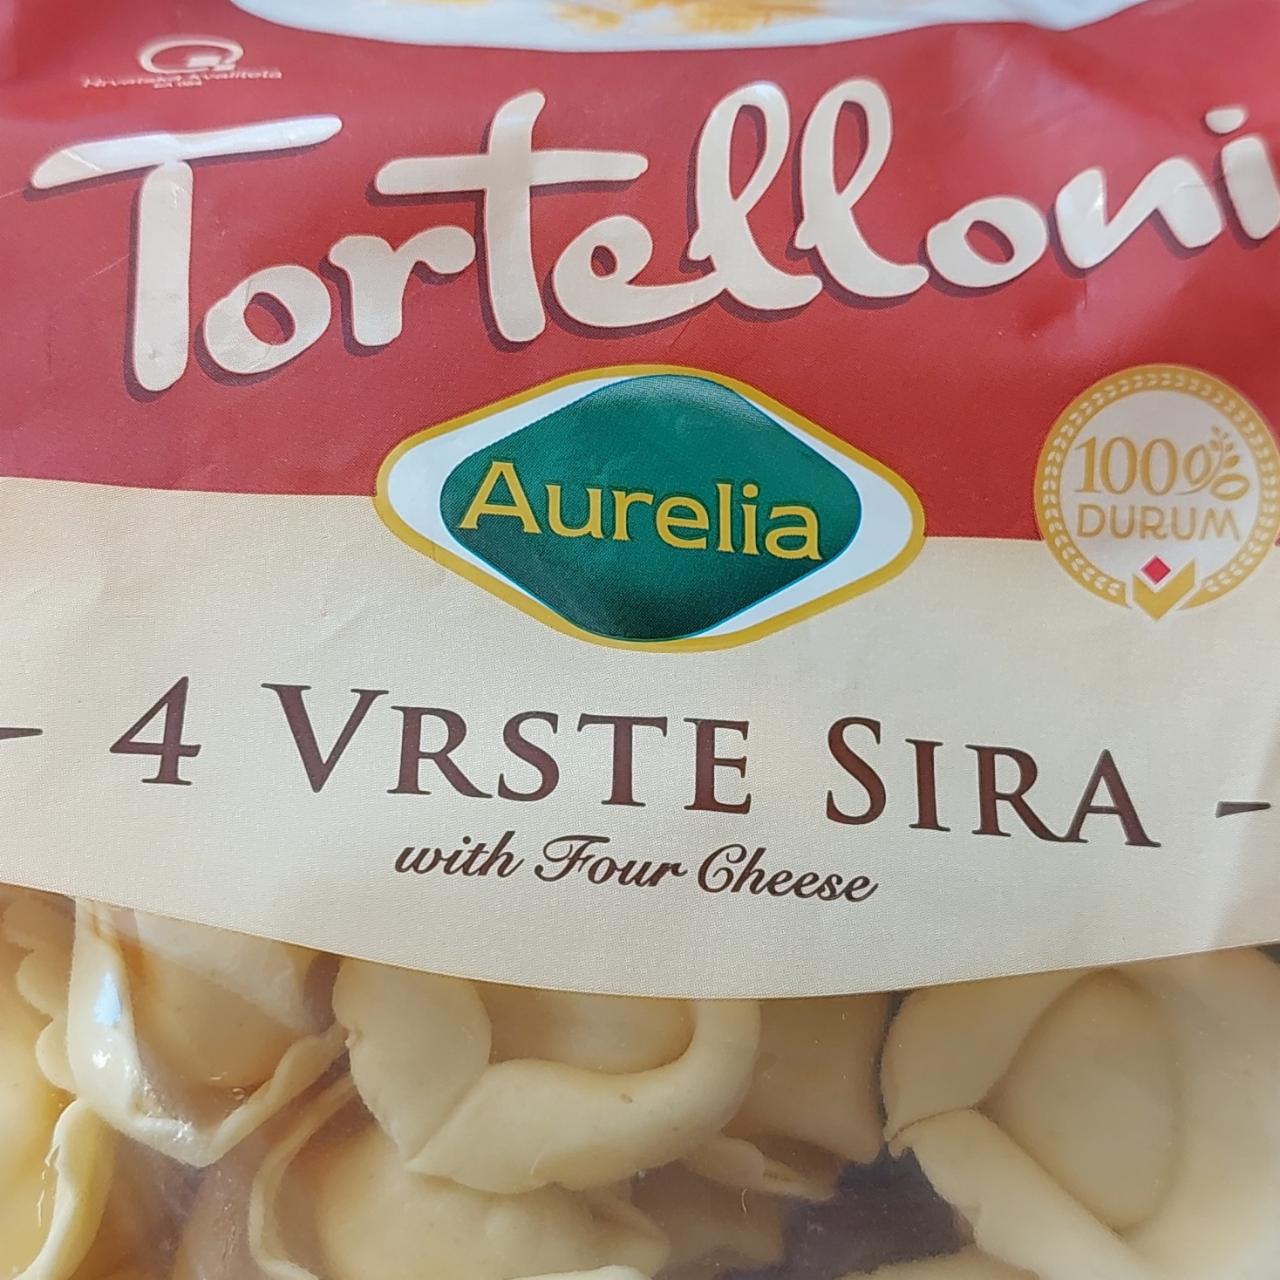 Fotografie - Tortelloni 4 vrste sira with four cheese Aurelia